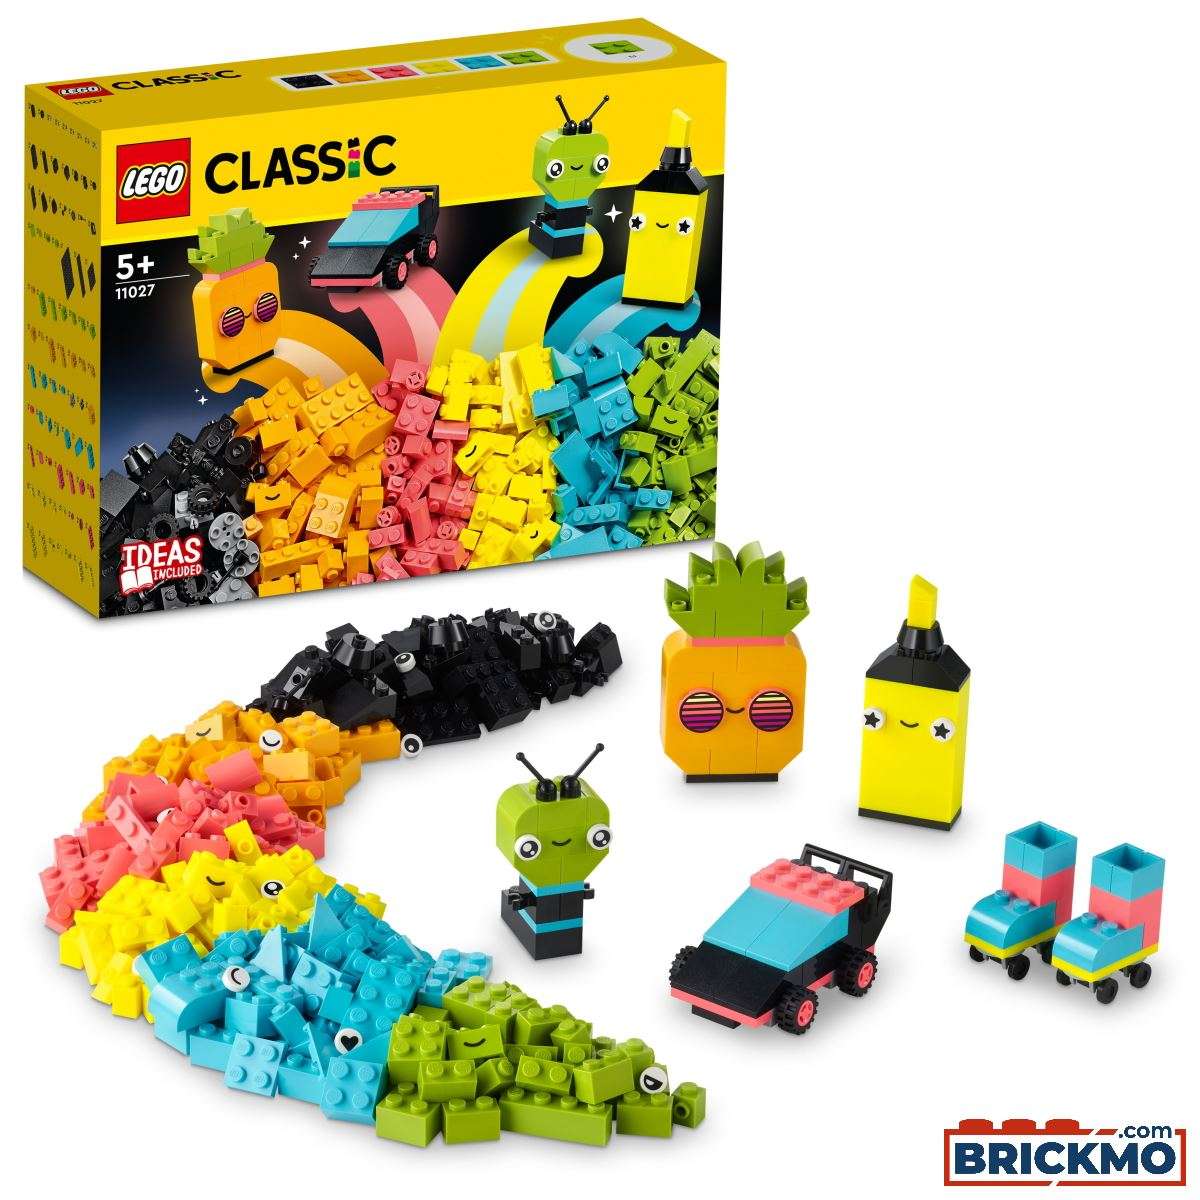 LEGO Classic 11027 Diversão Criativa em Tons Néon 11027